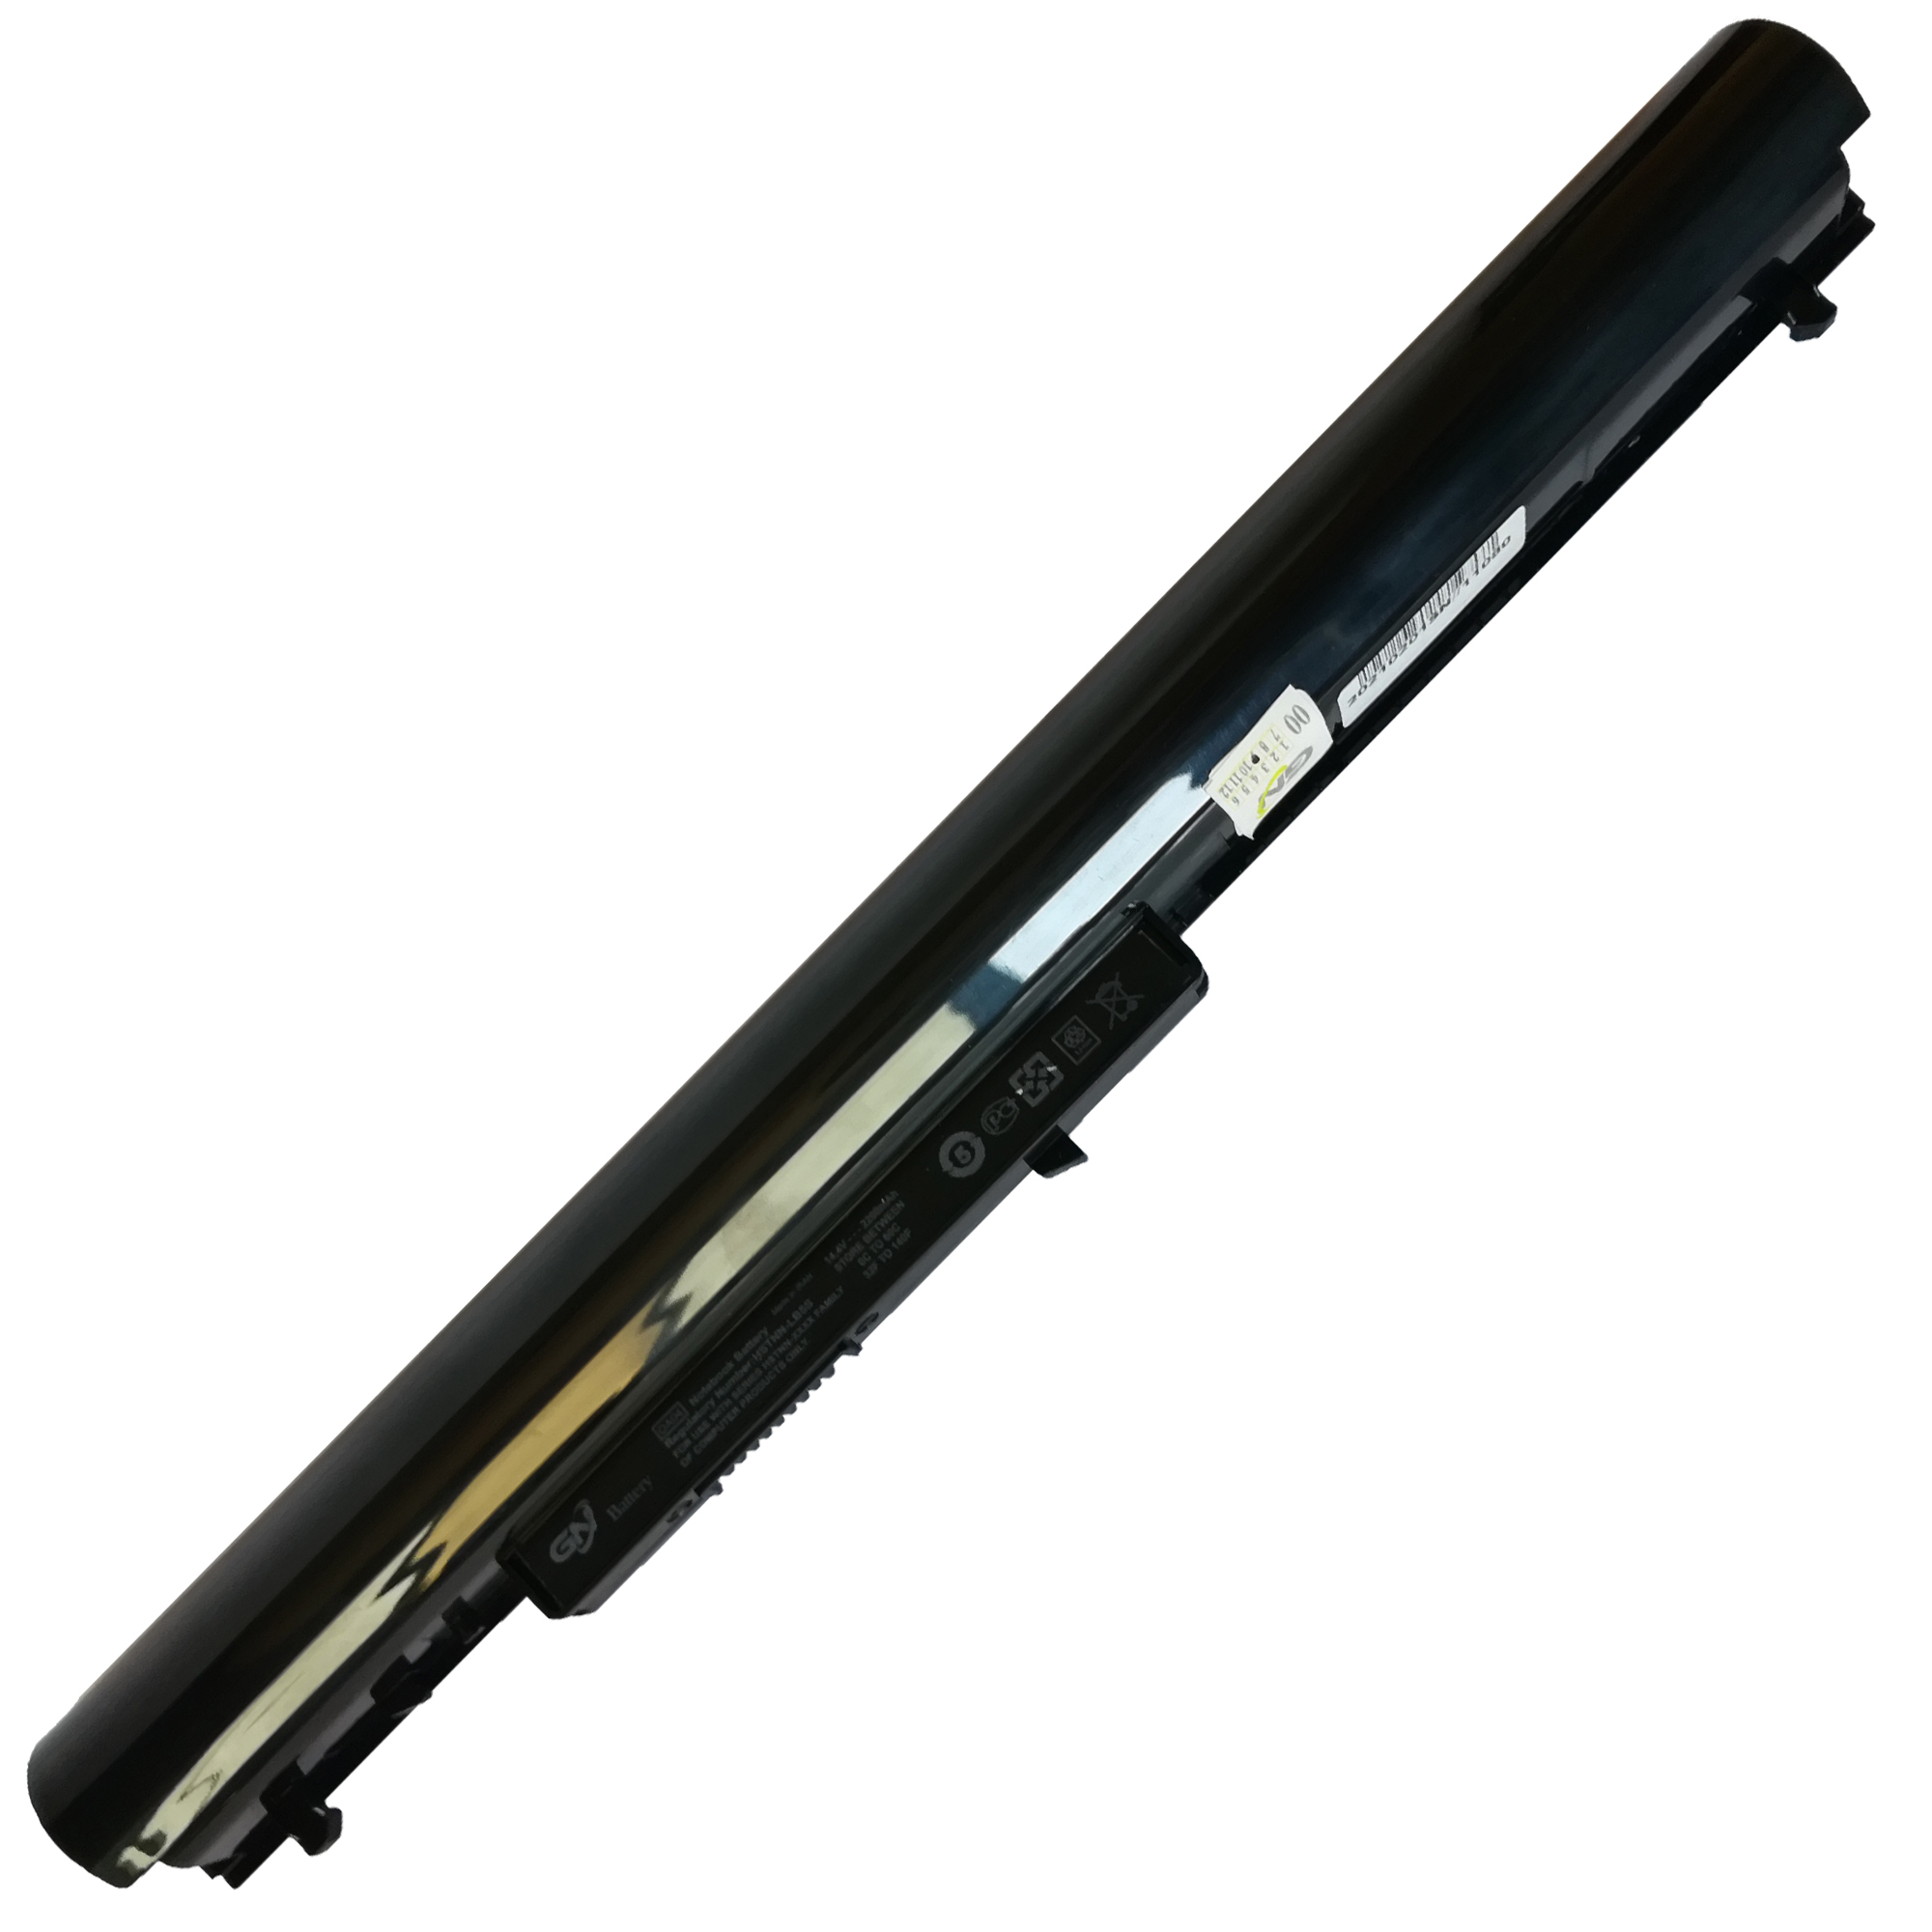 باتری لپ تاپ 4 سلولی گلدن نوت بوک جی ان مدل OA04 مناسب برای لپ تاپ اچ پی OA04/240 G2/250 G3/250 G2/240 G3/15-R/15-G/15-D/14-R/14-G/255 G3